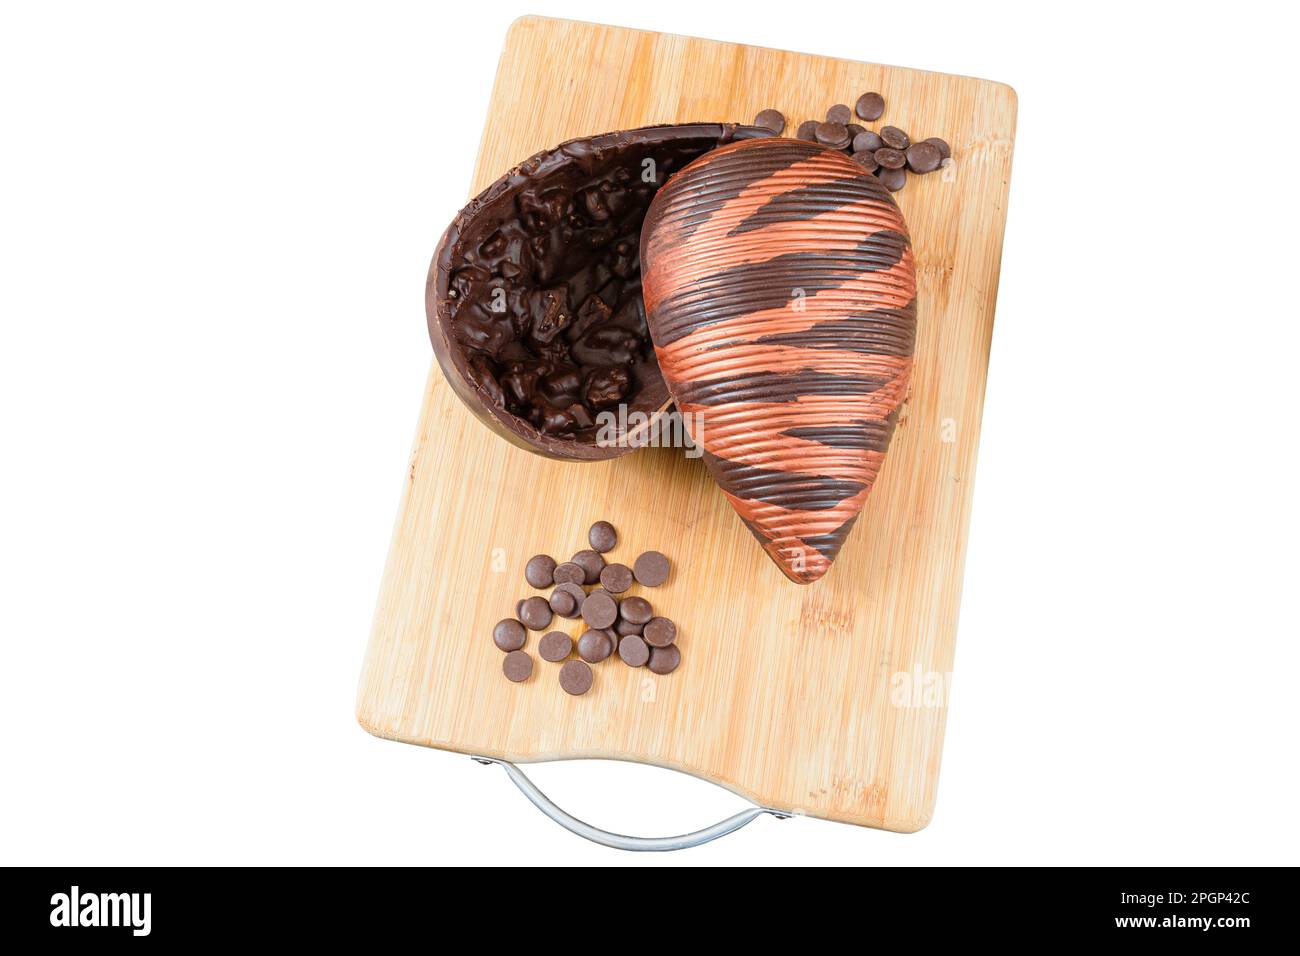 Œuf de Pâques au chocolat amer aux amandes croquantes, sur une planche de bois. Entouré de noix de Saint-Jacques au chocolat. Banque D'Images